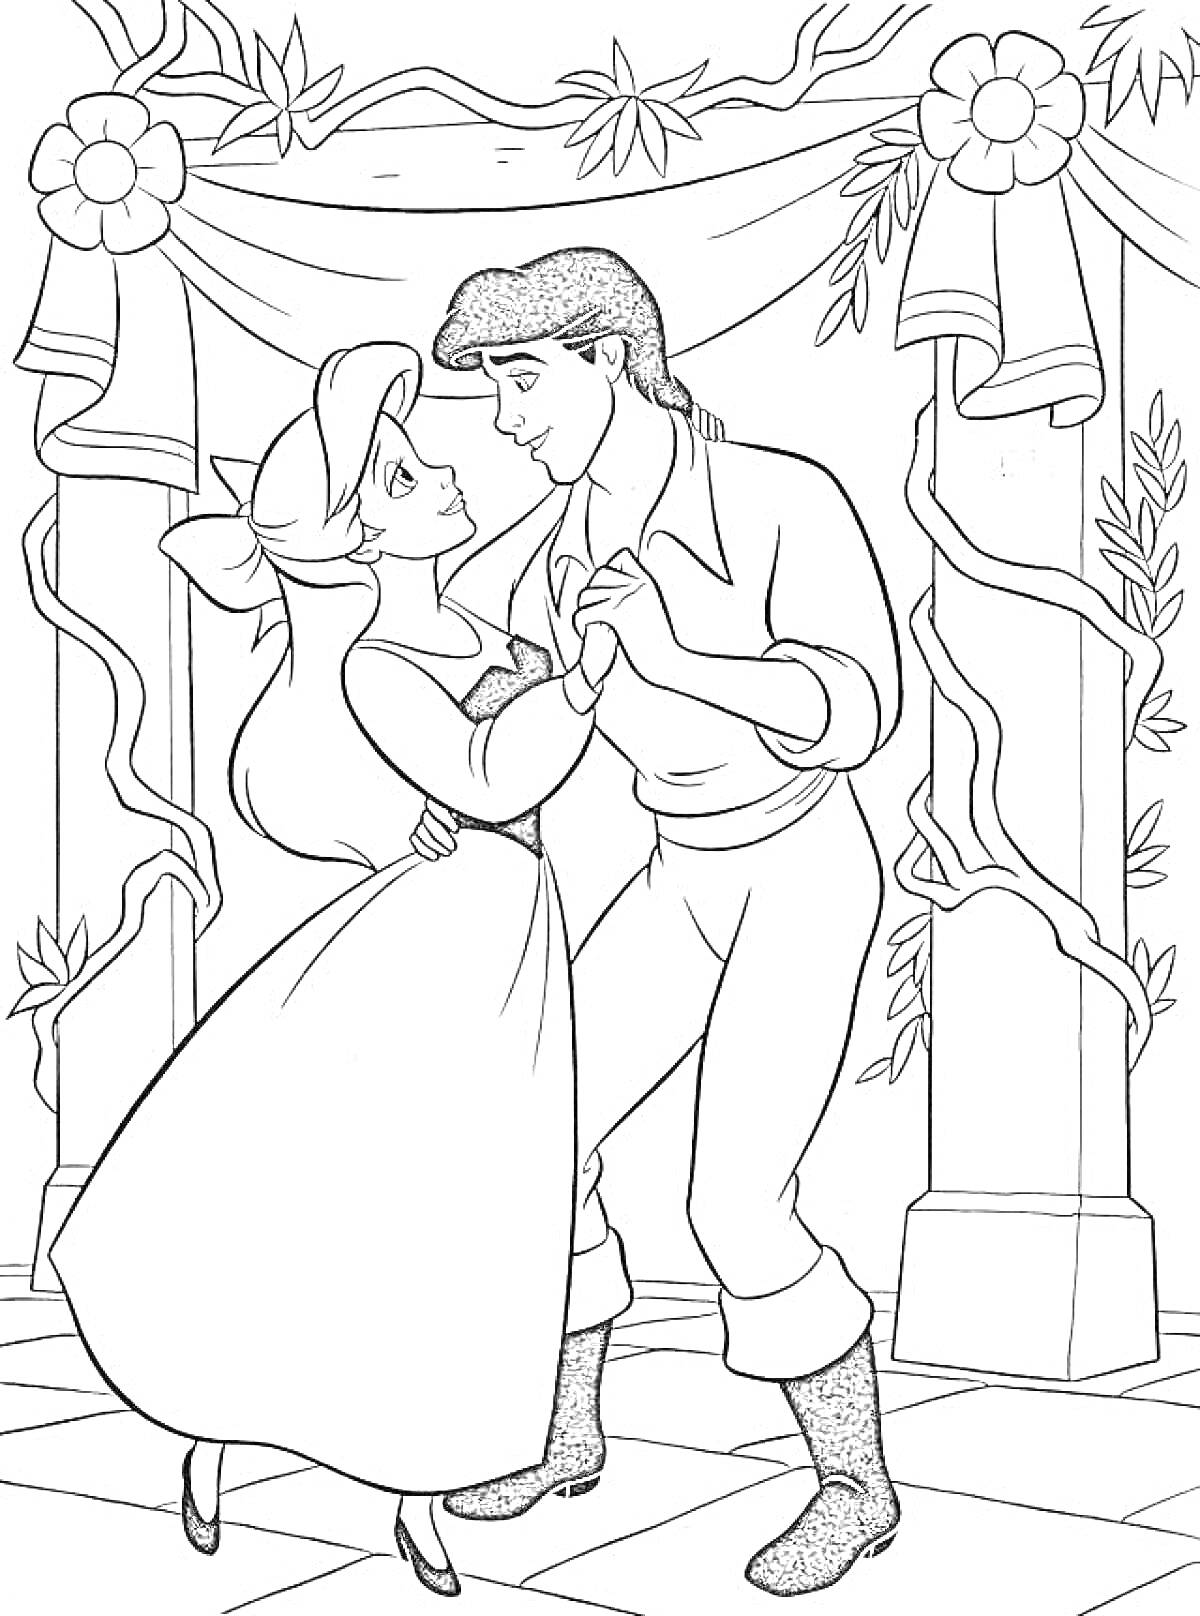 Раскраска Ариэль и принц Эрик танцуют в украшенном зале с цветами и лентами